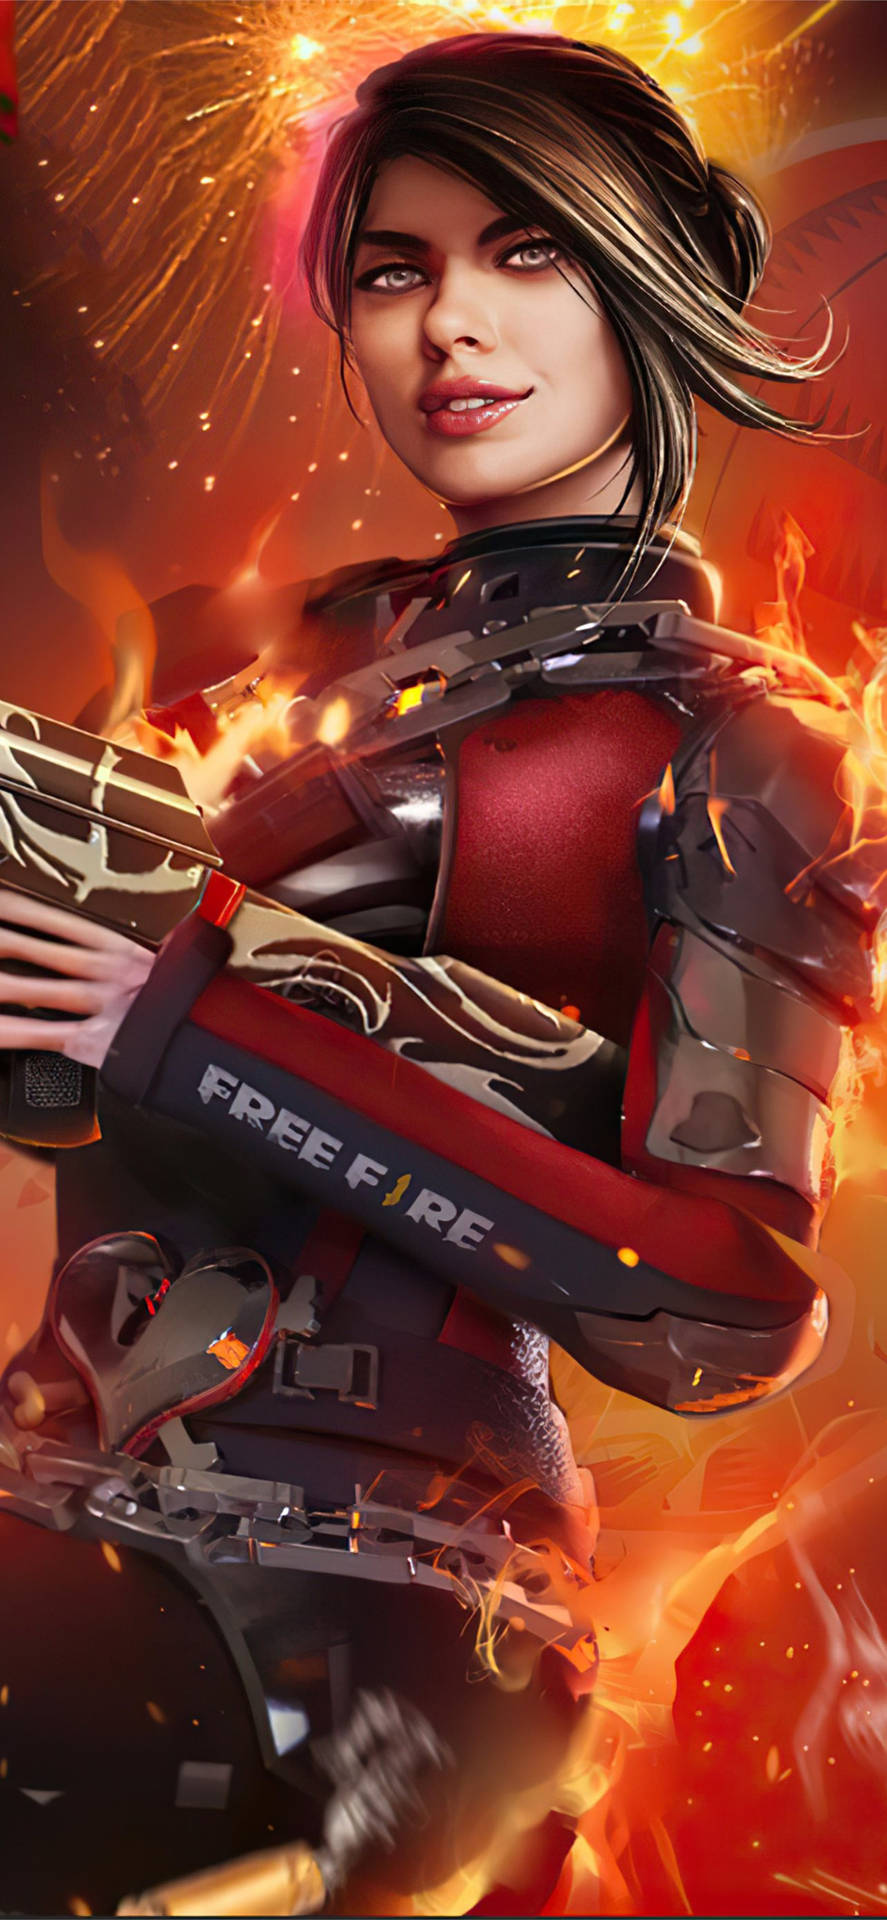 Free Fire Season 1: Fierce Battle In Red Body-suit